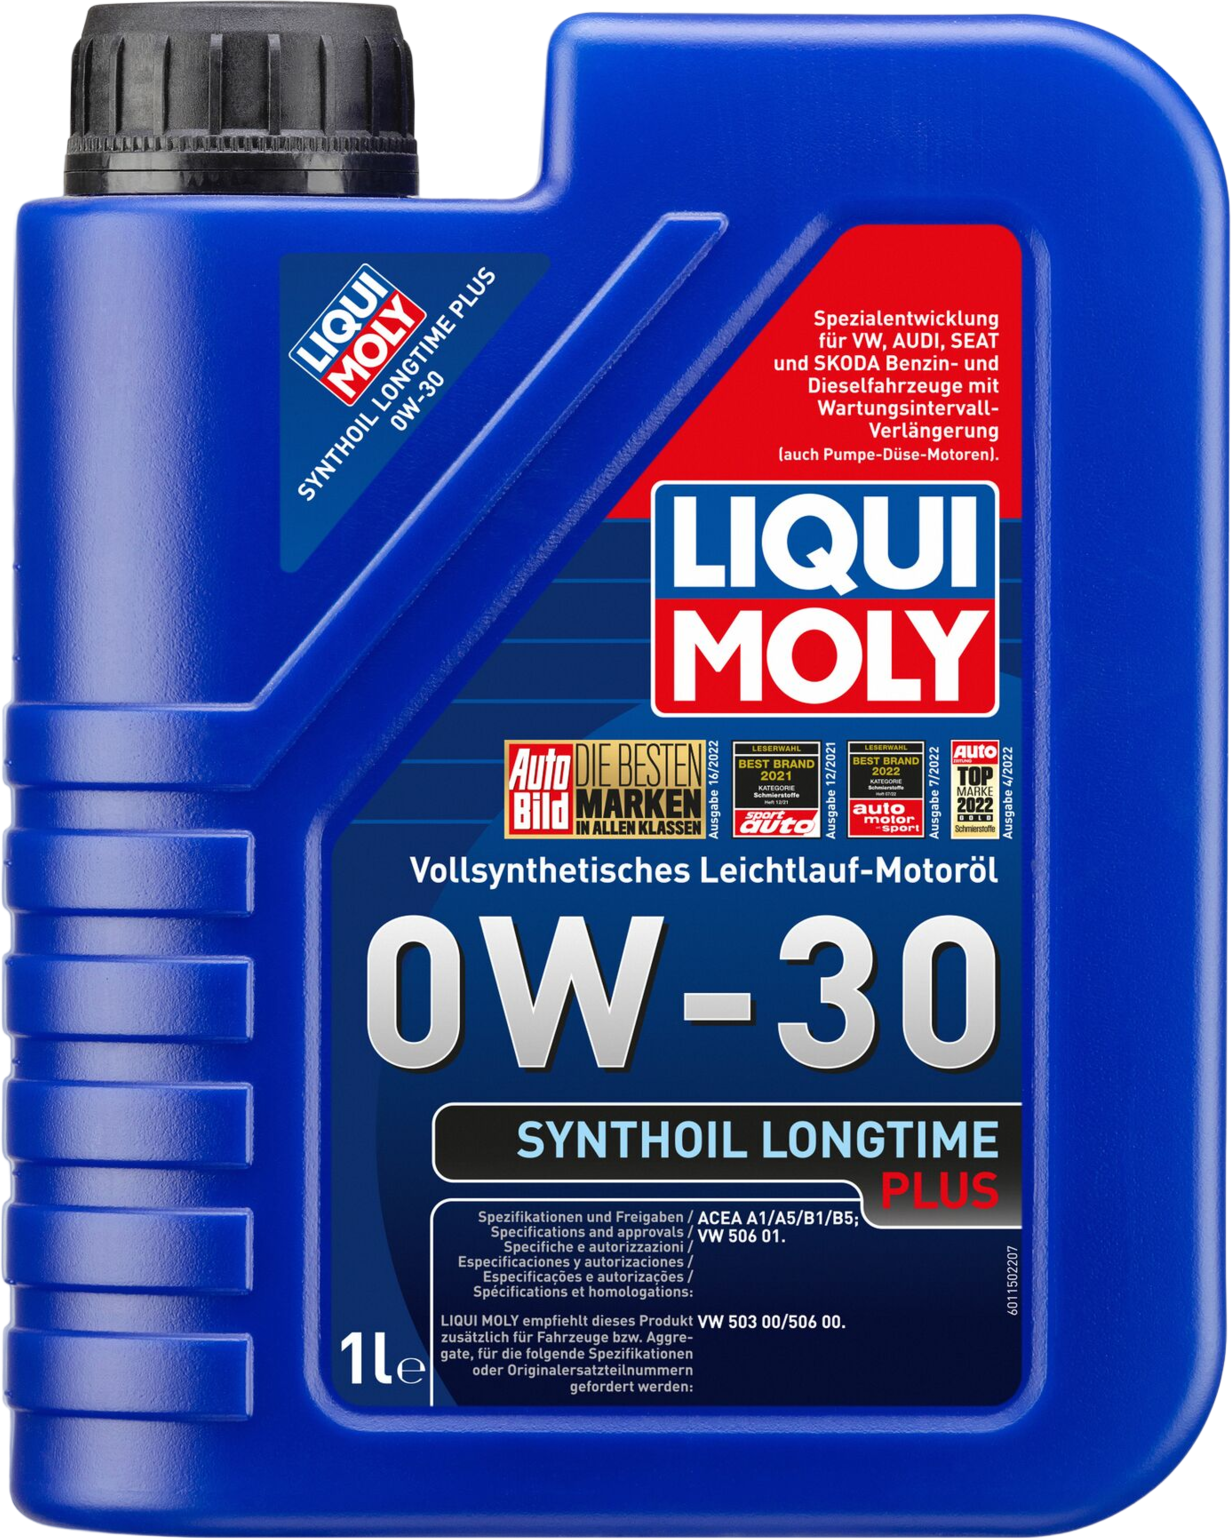 Liqui Moly Synthoil Longtime Plus 0W-30, 6 x 1 lt detail 2